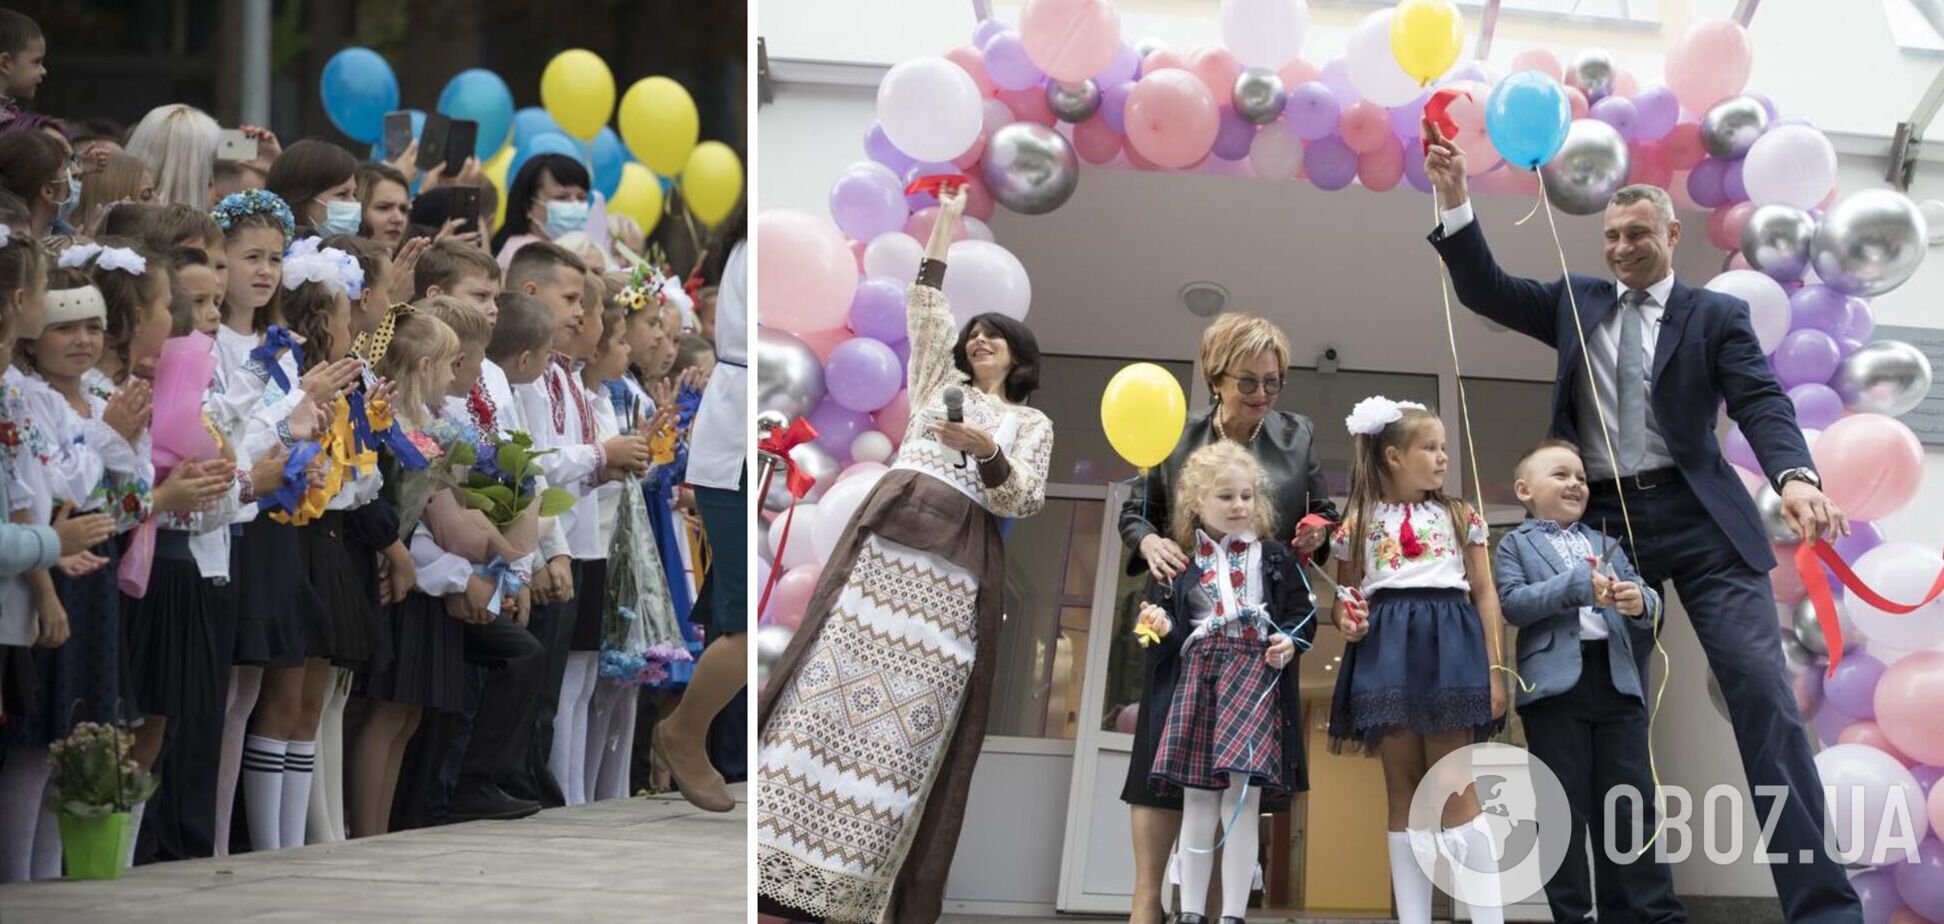 Кличко на День знань відкрив сучасну європейську школу у Києві. Фото